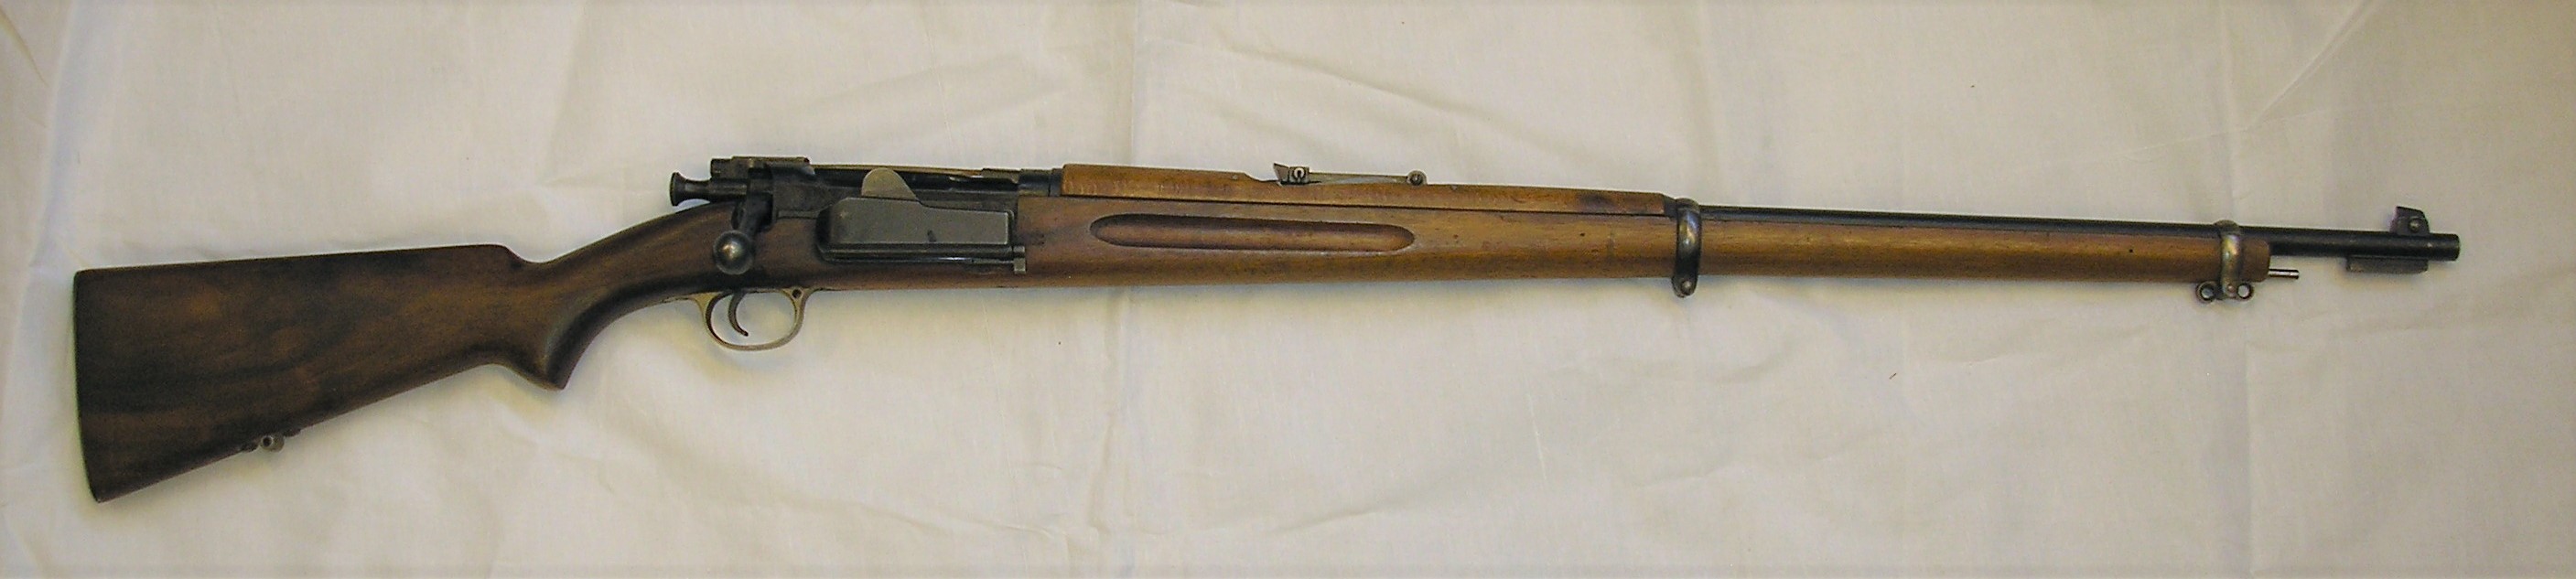 ./guns/rifle/bilder/Rifle-Kongsberg-Krag-M1894-1944-Nb090-1.JPG